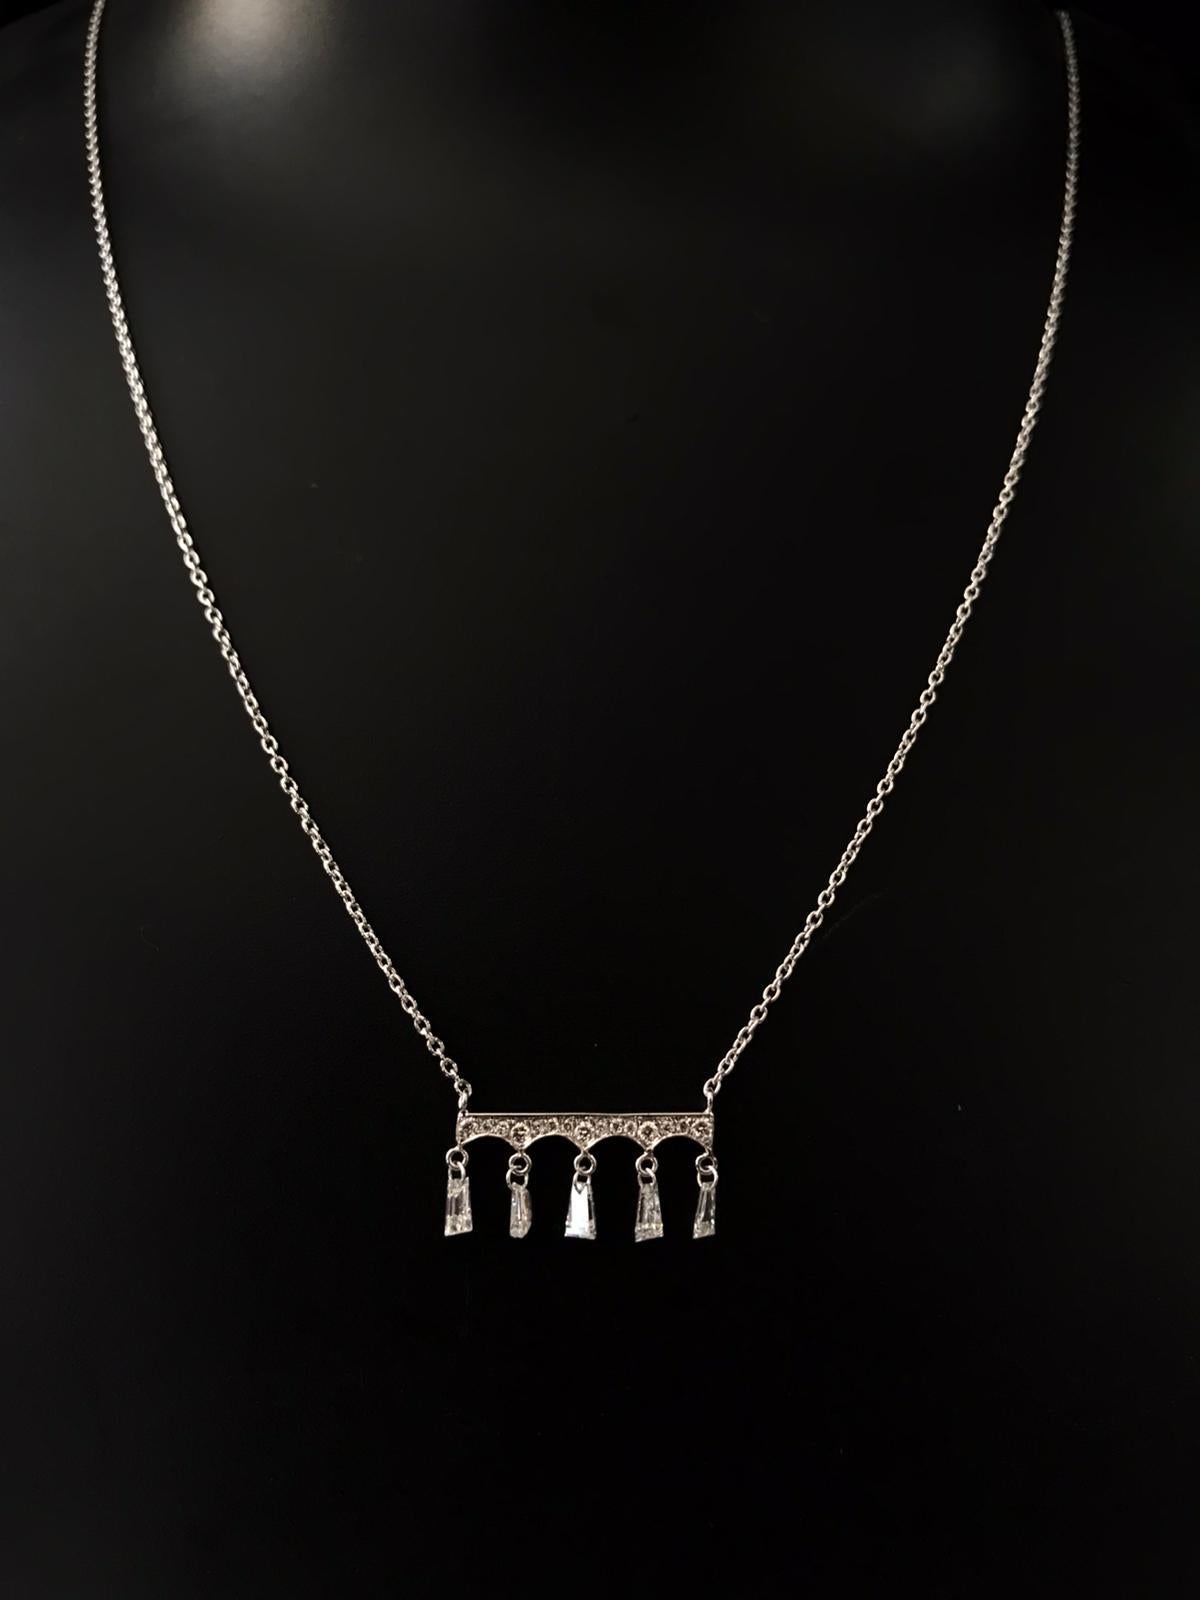 PANIM Collier avec pendentif baguette en diamant de 0,36 carat

Ce collier PANIM est doté d'un superbe pendentif baguette en diamant qui capte magnifiquement la lumière. Son design épuré et minimaliste le rend parfait pour les occasions